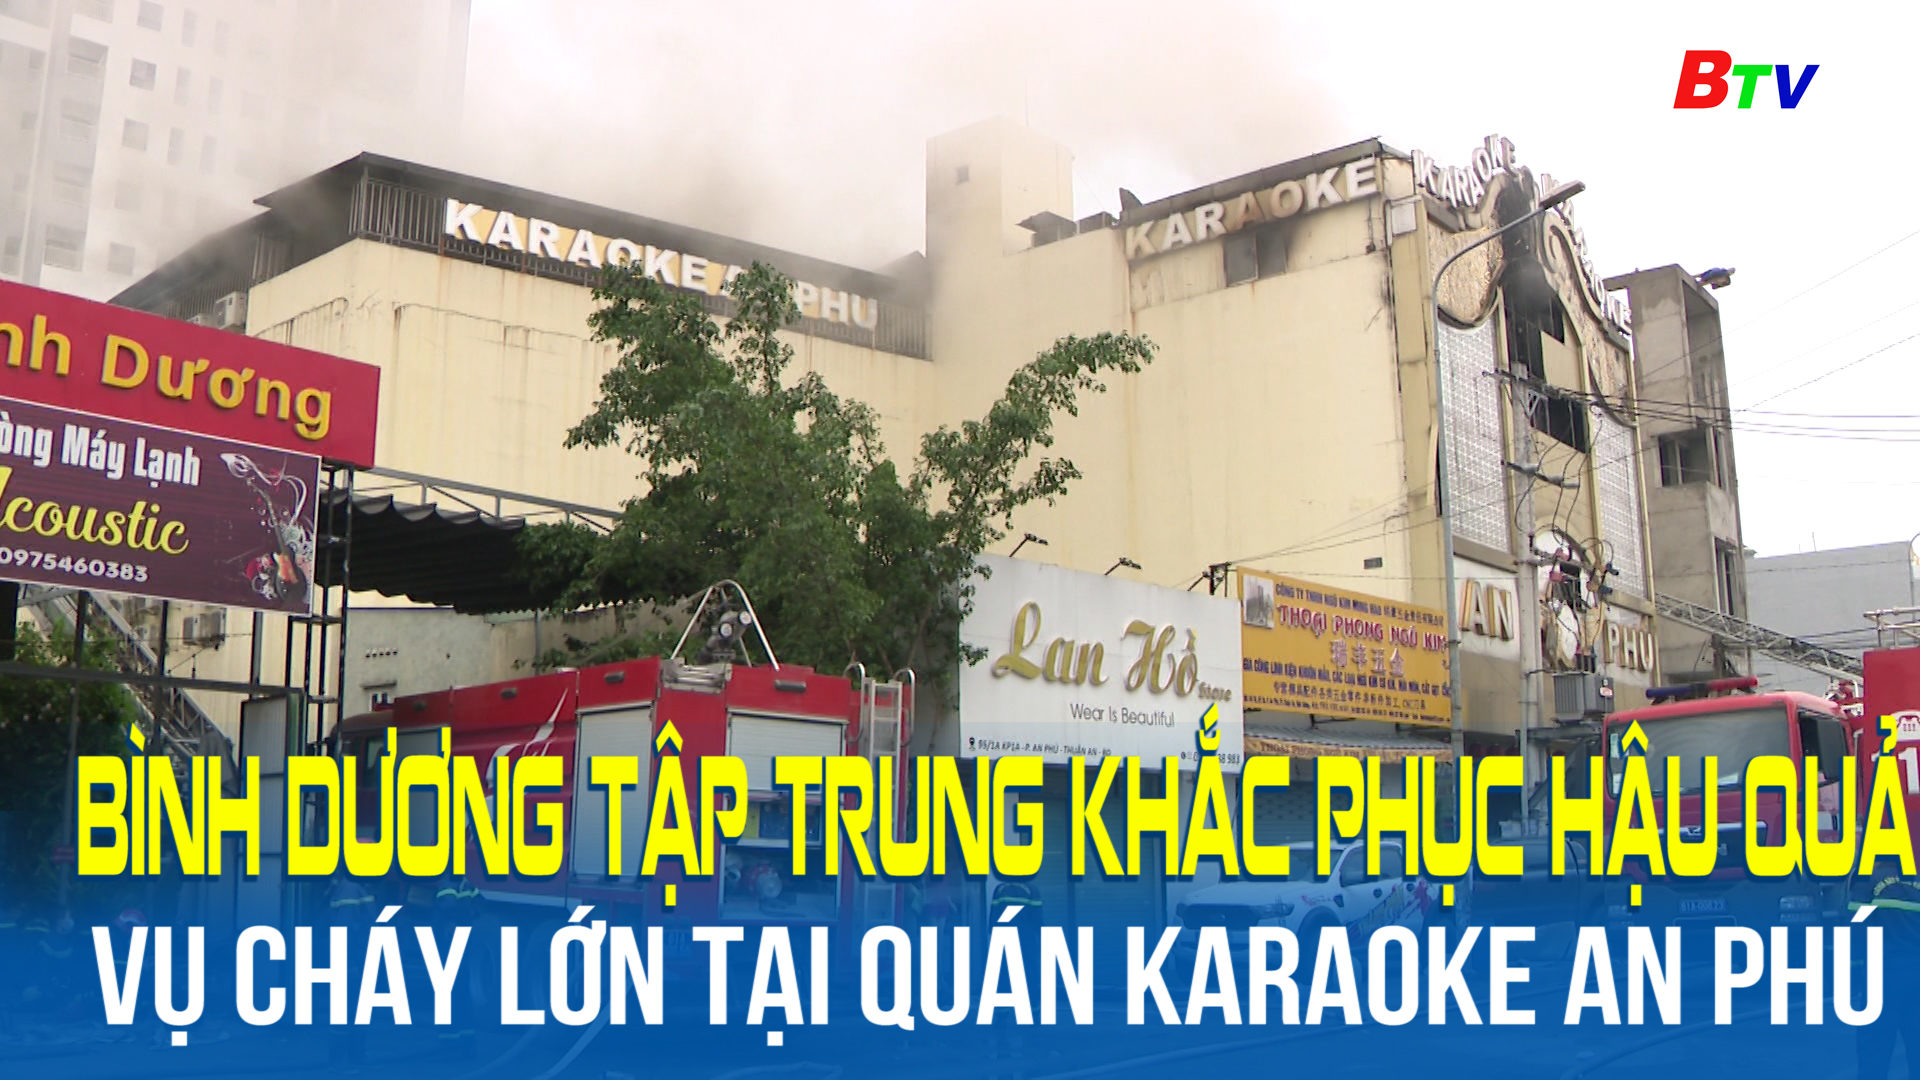 Bình Dương tập trung khắc phục hậu quả vụ cháy lớn tại quán karaoke An Phú